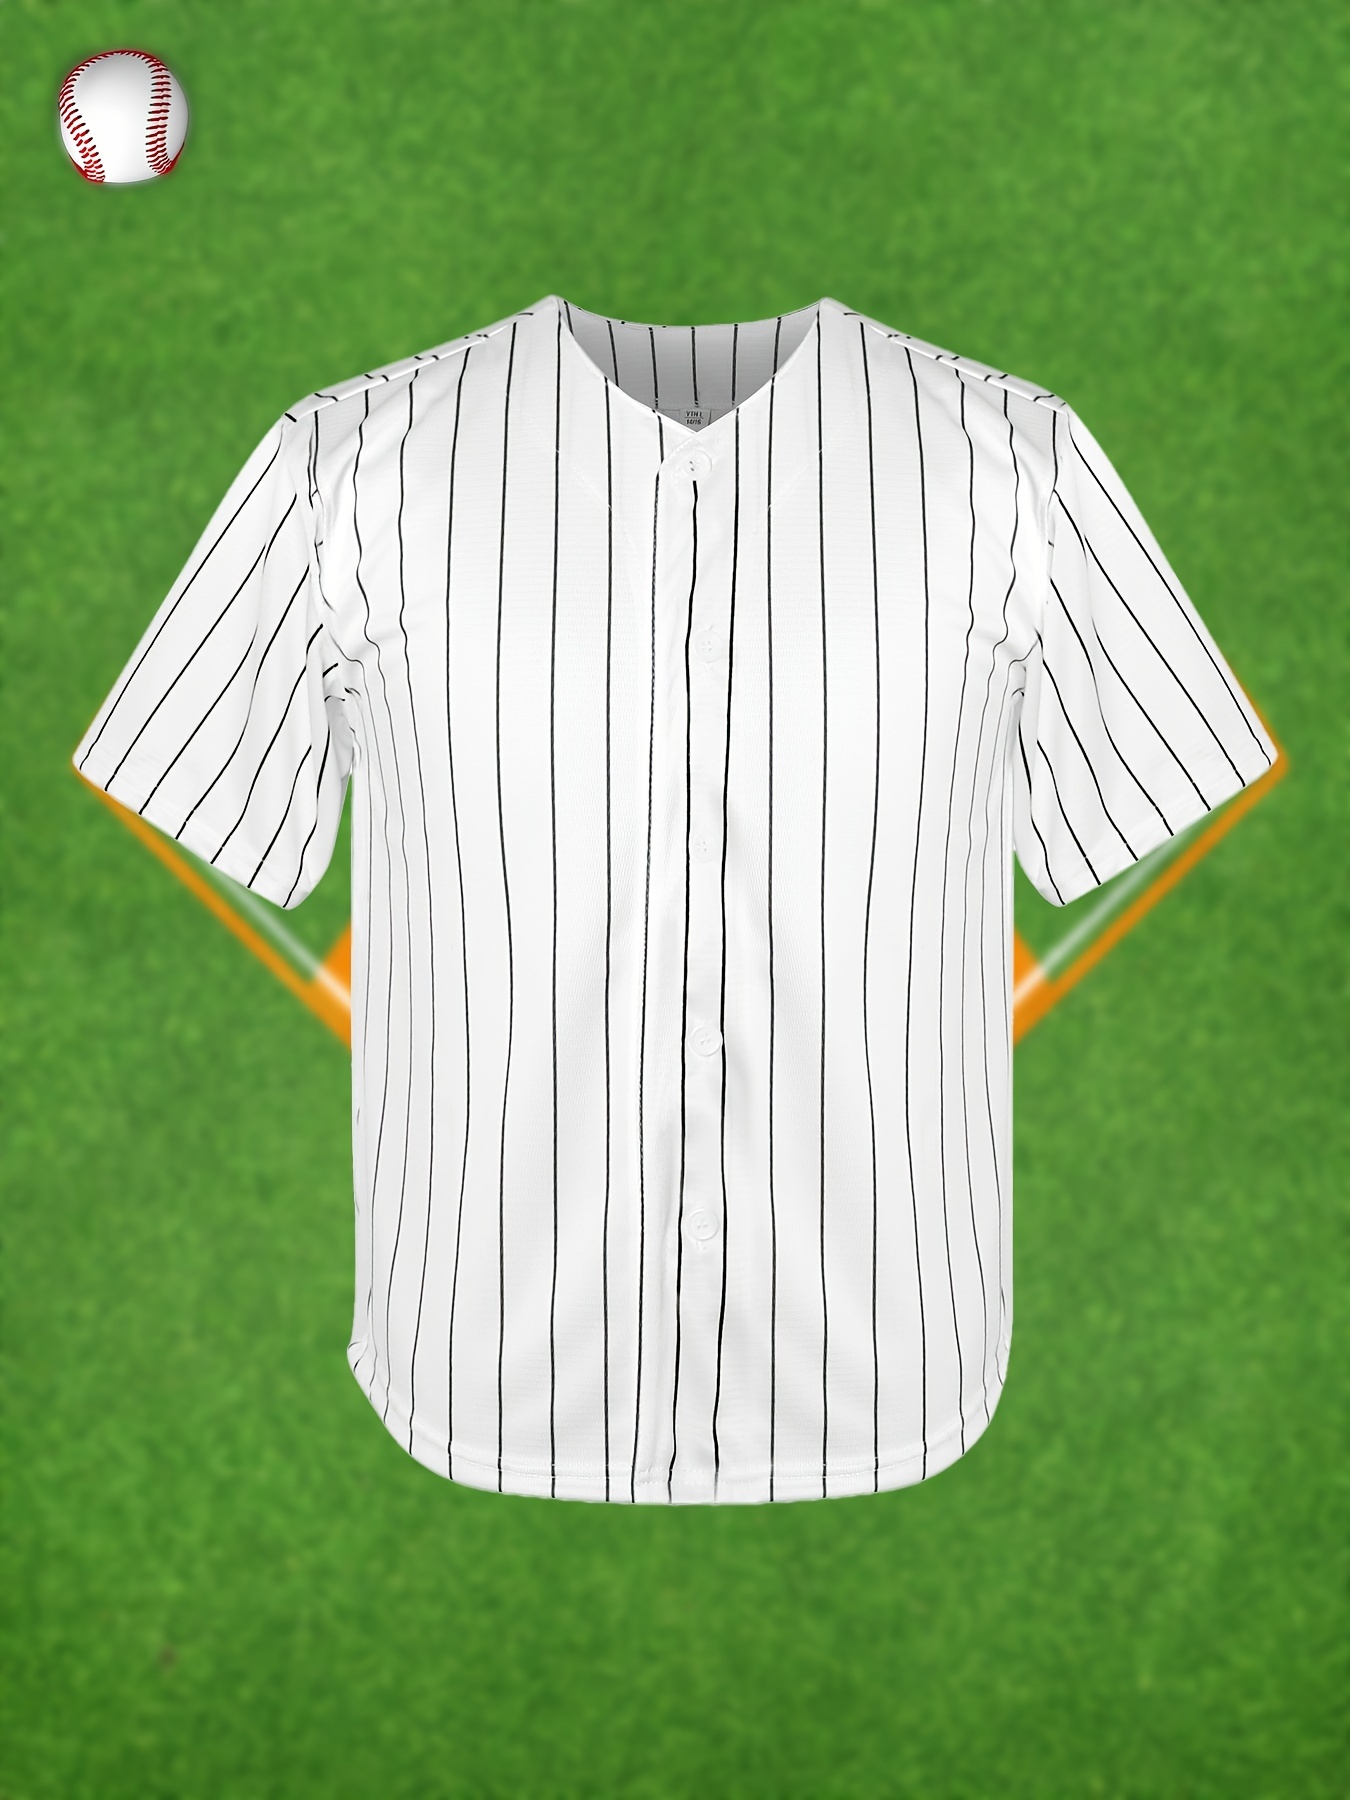 Jerseys For Baseball - Temu